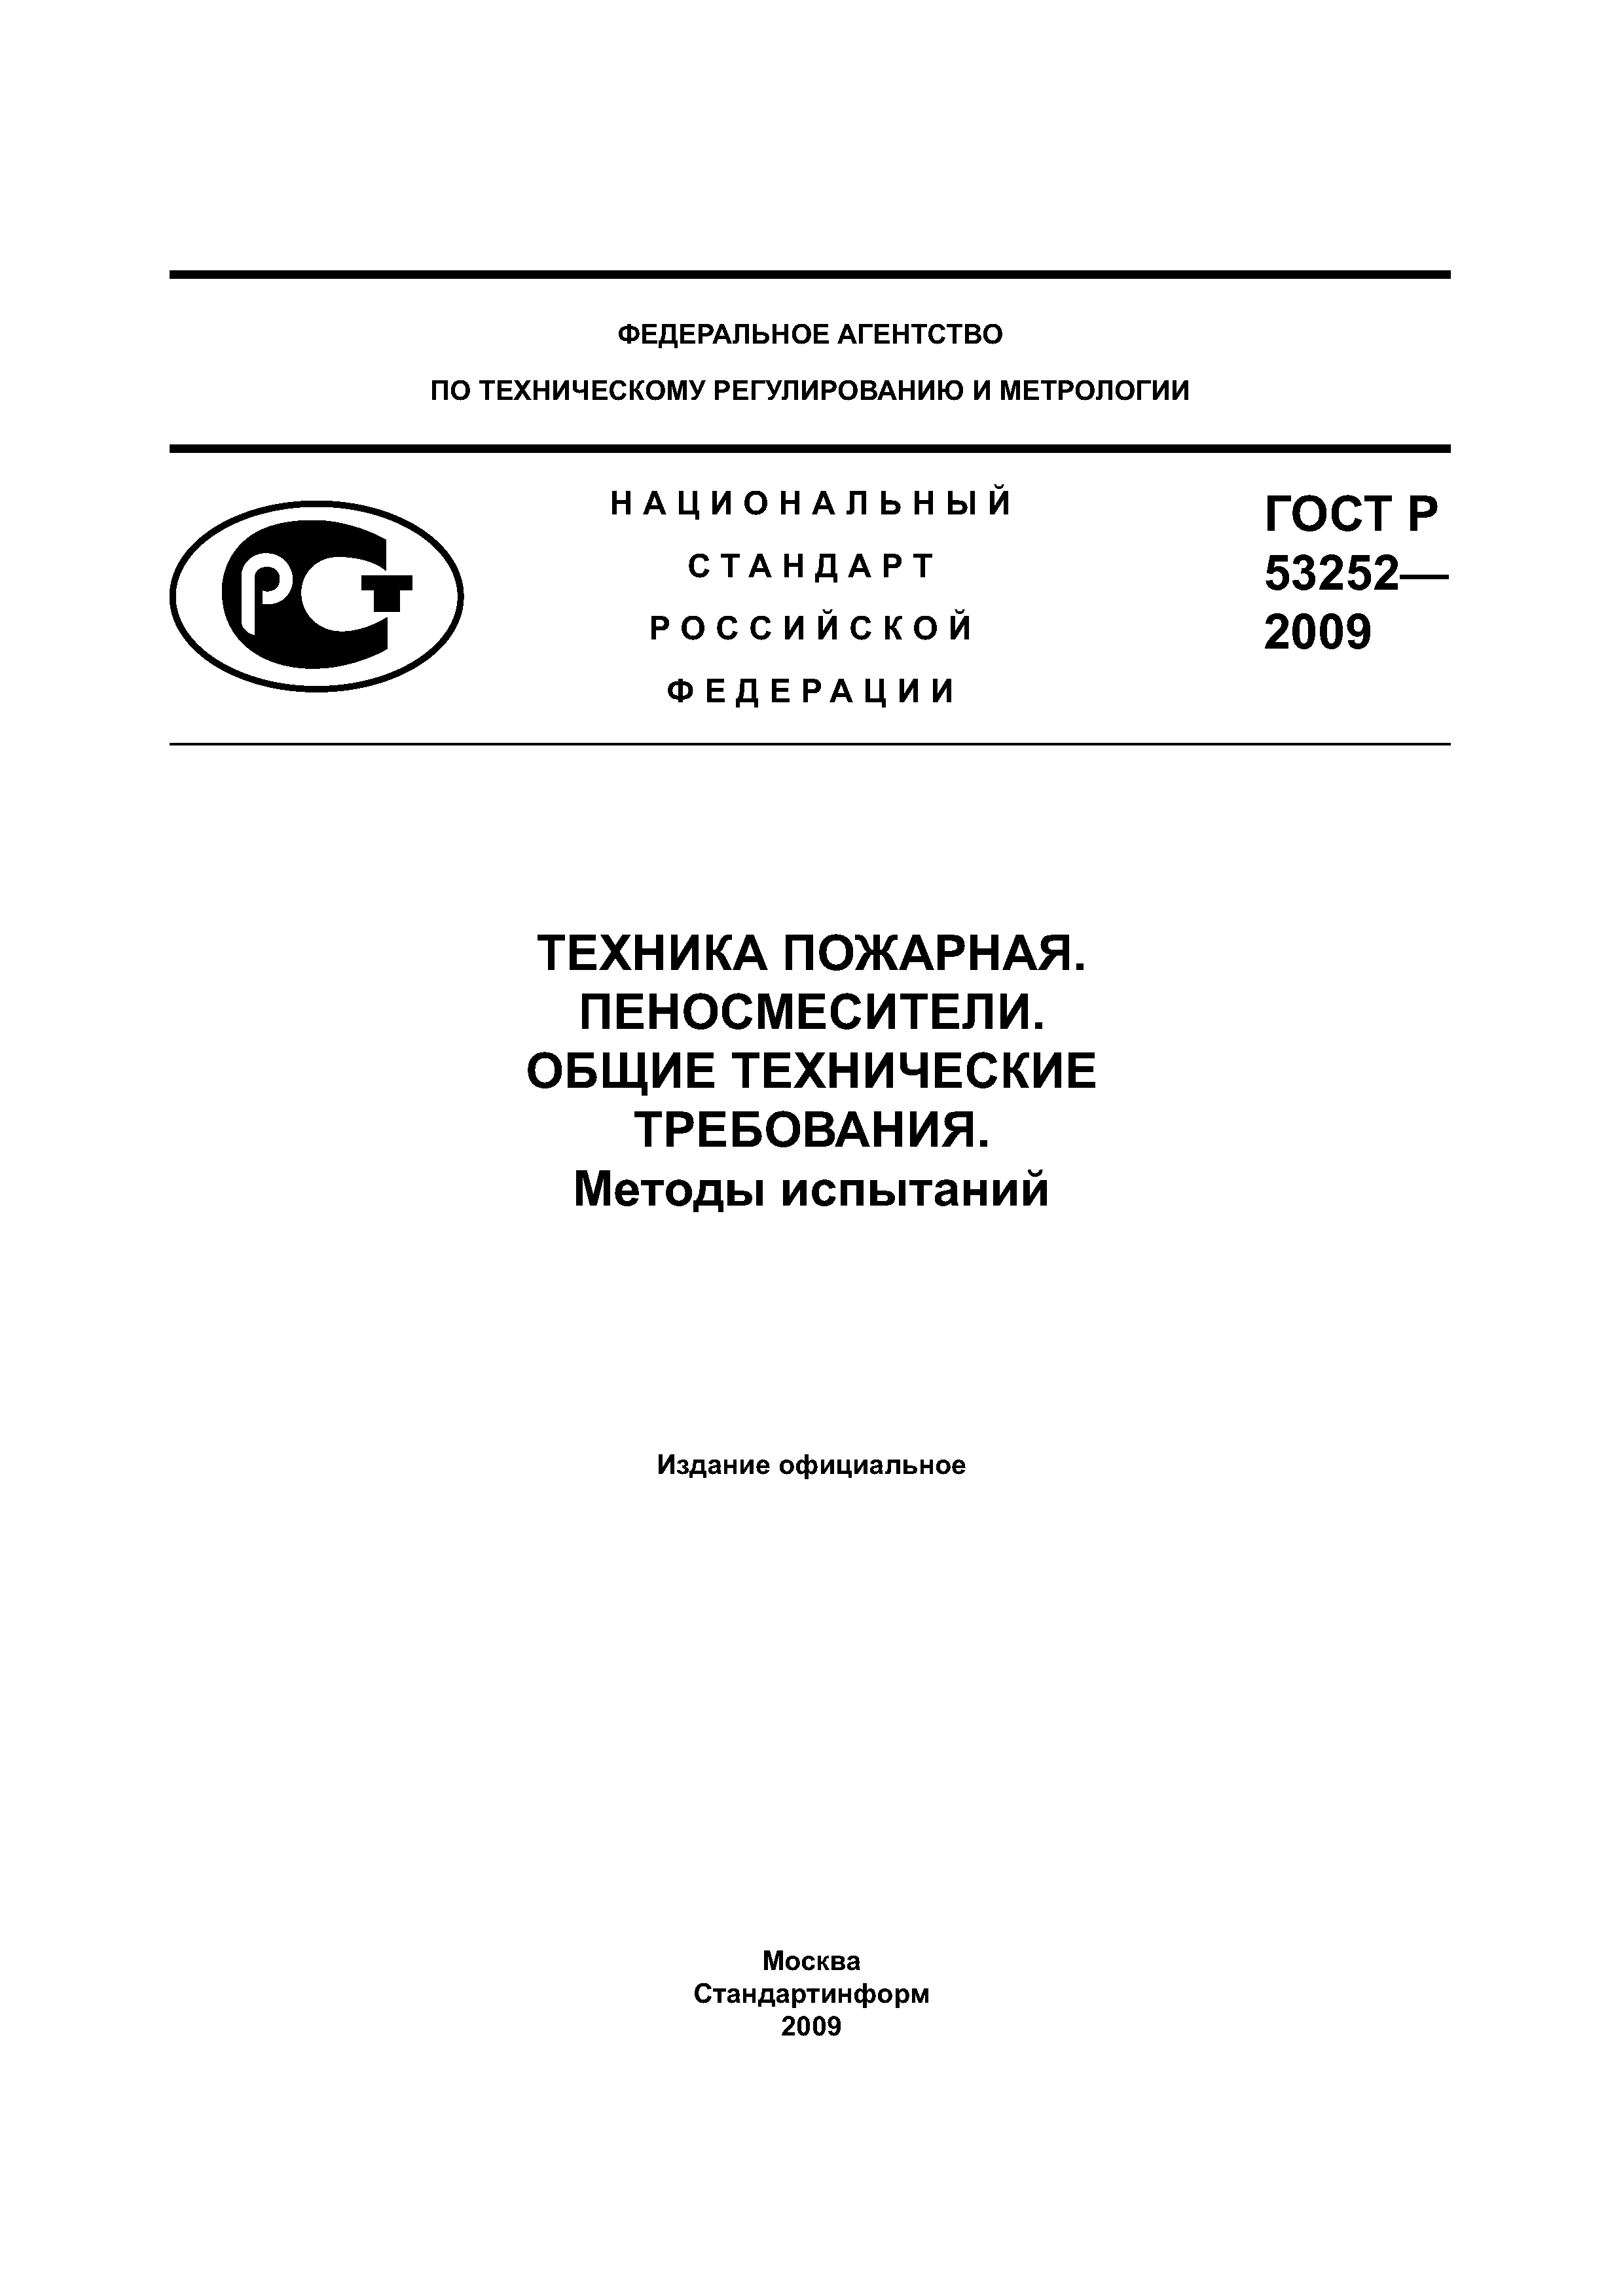 Пеносмеситель ПС-1 ГОСТ Р 53252-2009